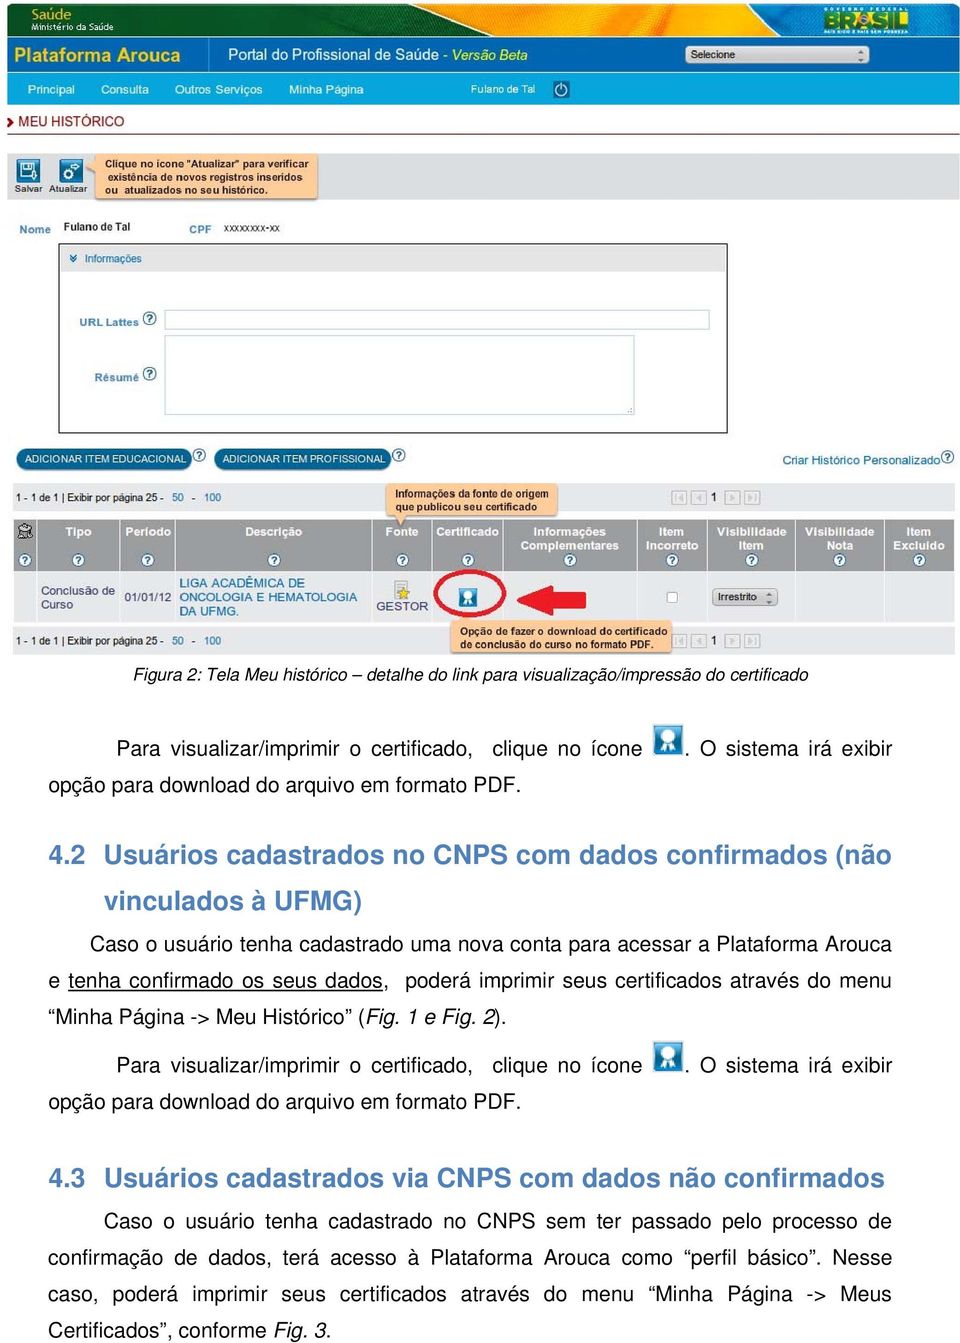 2 Usuários cadastrados no CNPS com dados confirmados (não vinculados à UFMG) Caso o usuário tenha cadastrado uma nova conta para acessar a Plataforma Arouca e tenha confirmado os seus dados, poderá